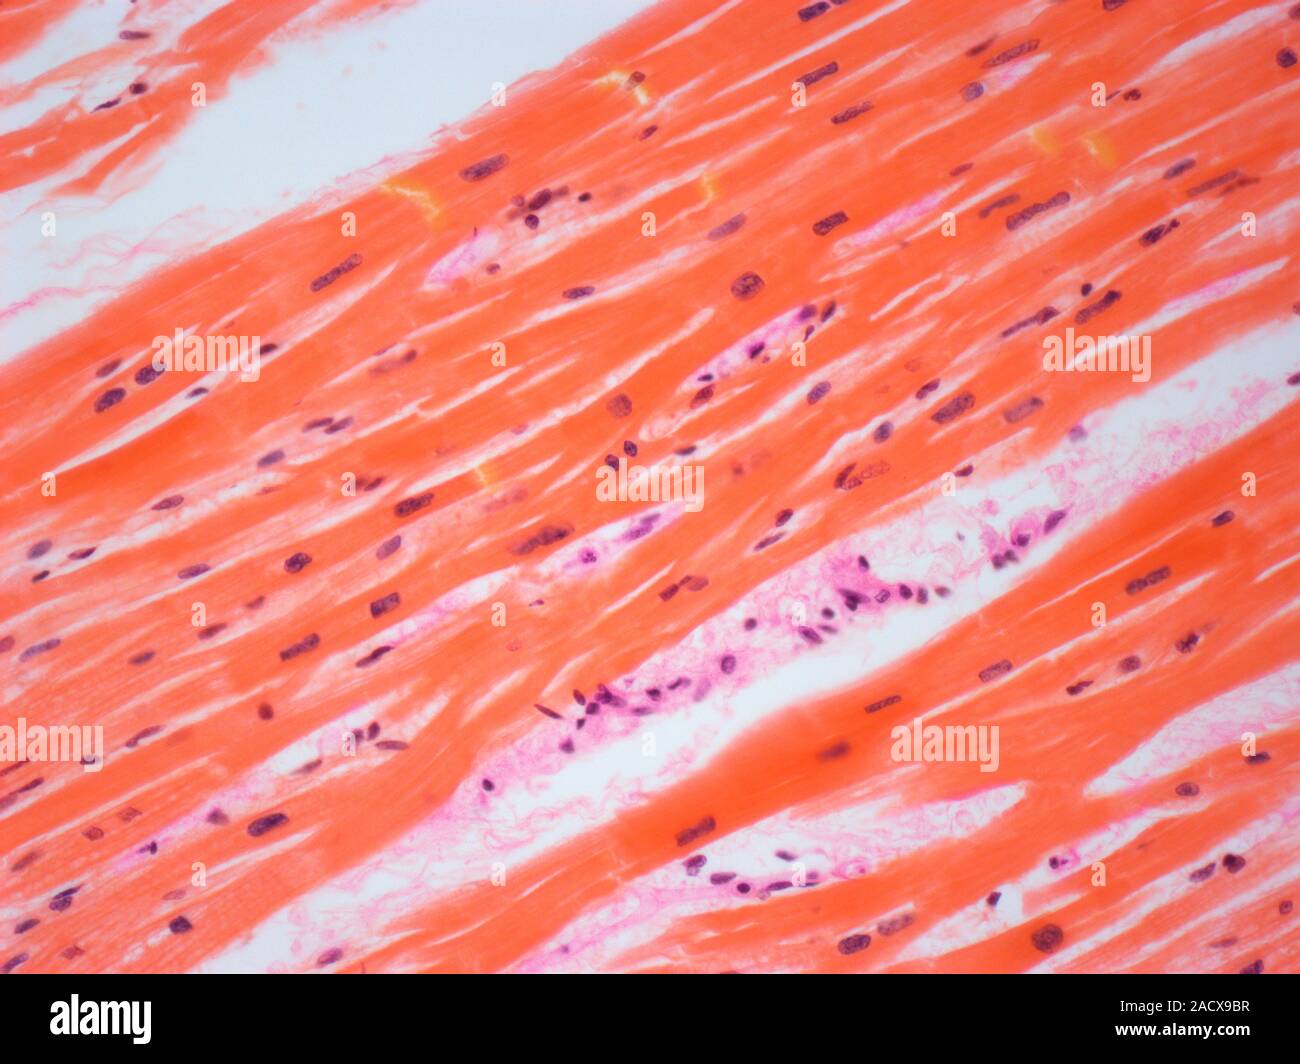 Клетка сердечной поперечно полосатой мышечной ткани. Поперечно полосатая сердечная мышечная ткань микропрепарат. Гладкая мышечная микропрепарат. Скелетная мышечная ткань микропрепарат. Сердечная мышечная ткань микропрепарат.